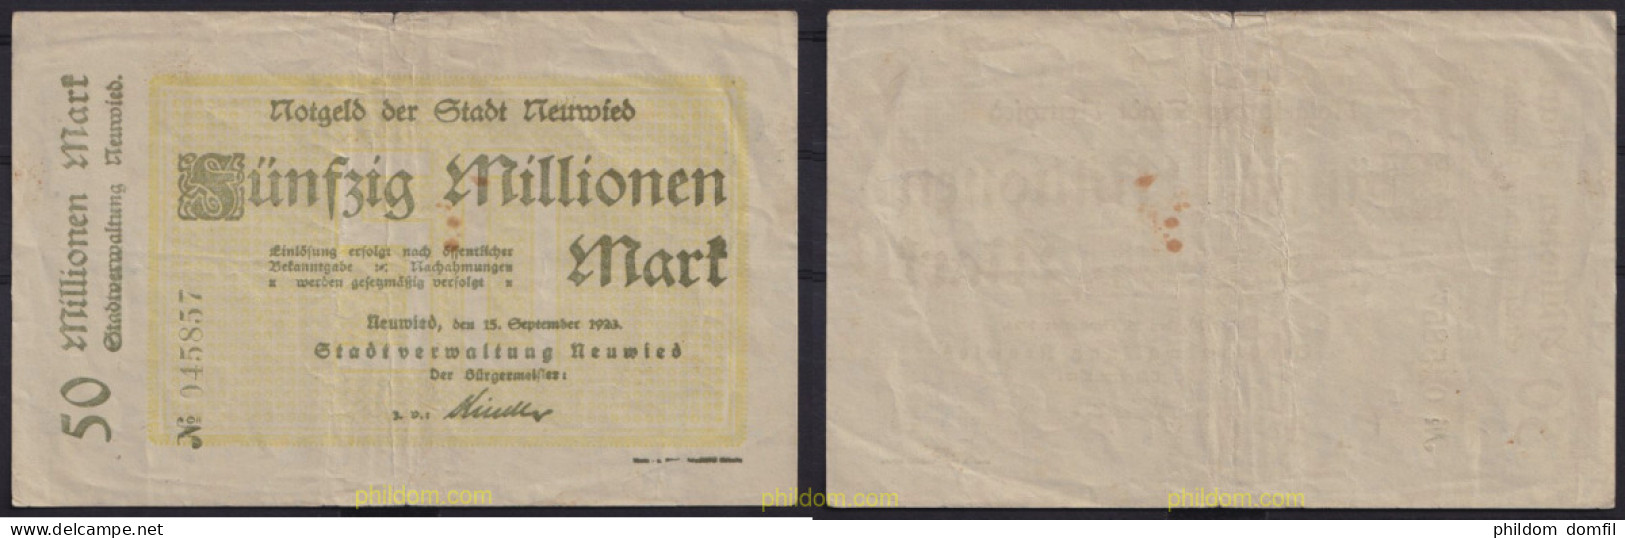 3681 ALEMANIA 1923 GERMANY 50000000 MARK NEUWIED 1923 - Reichsschuldenverwaltung